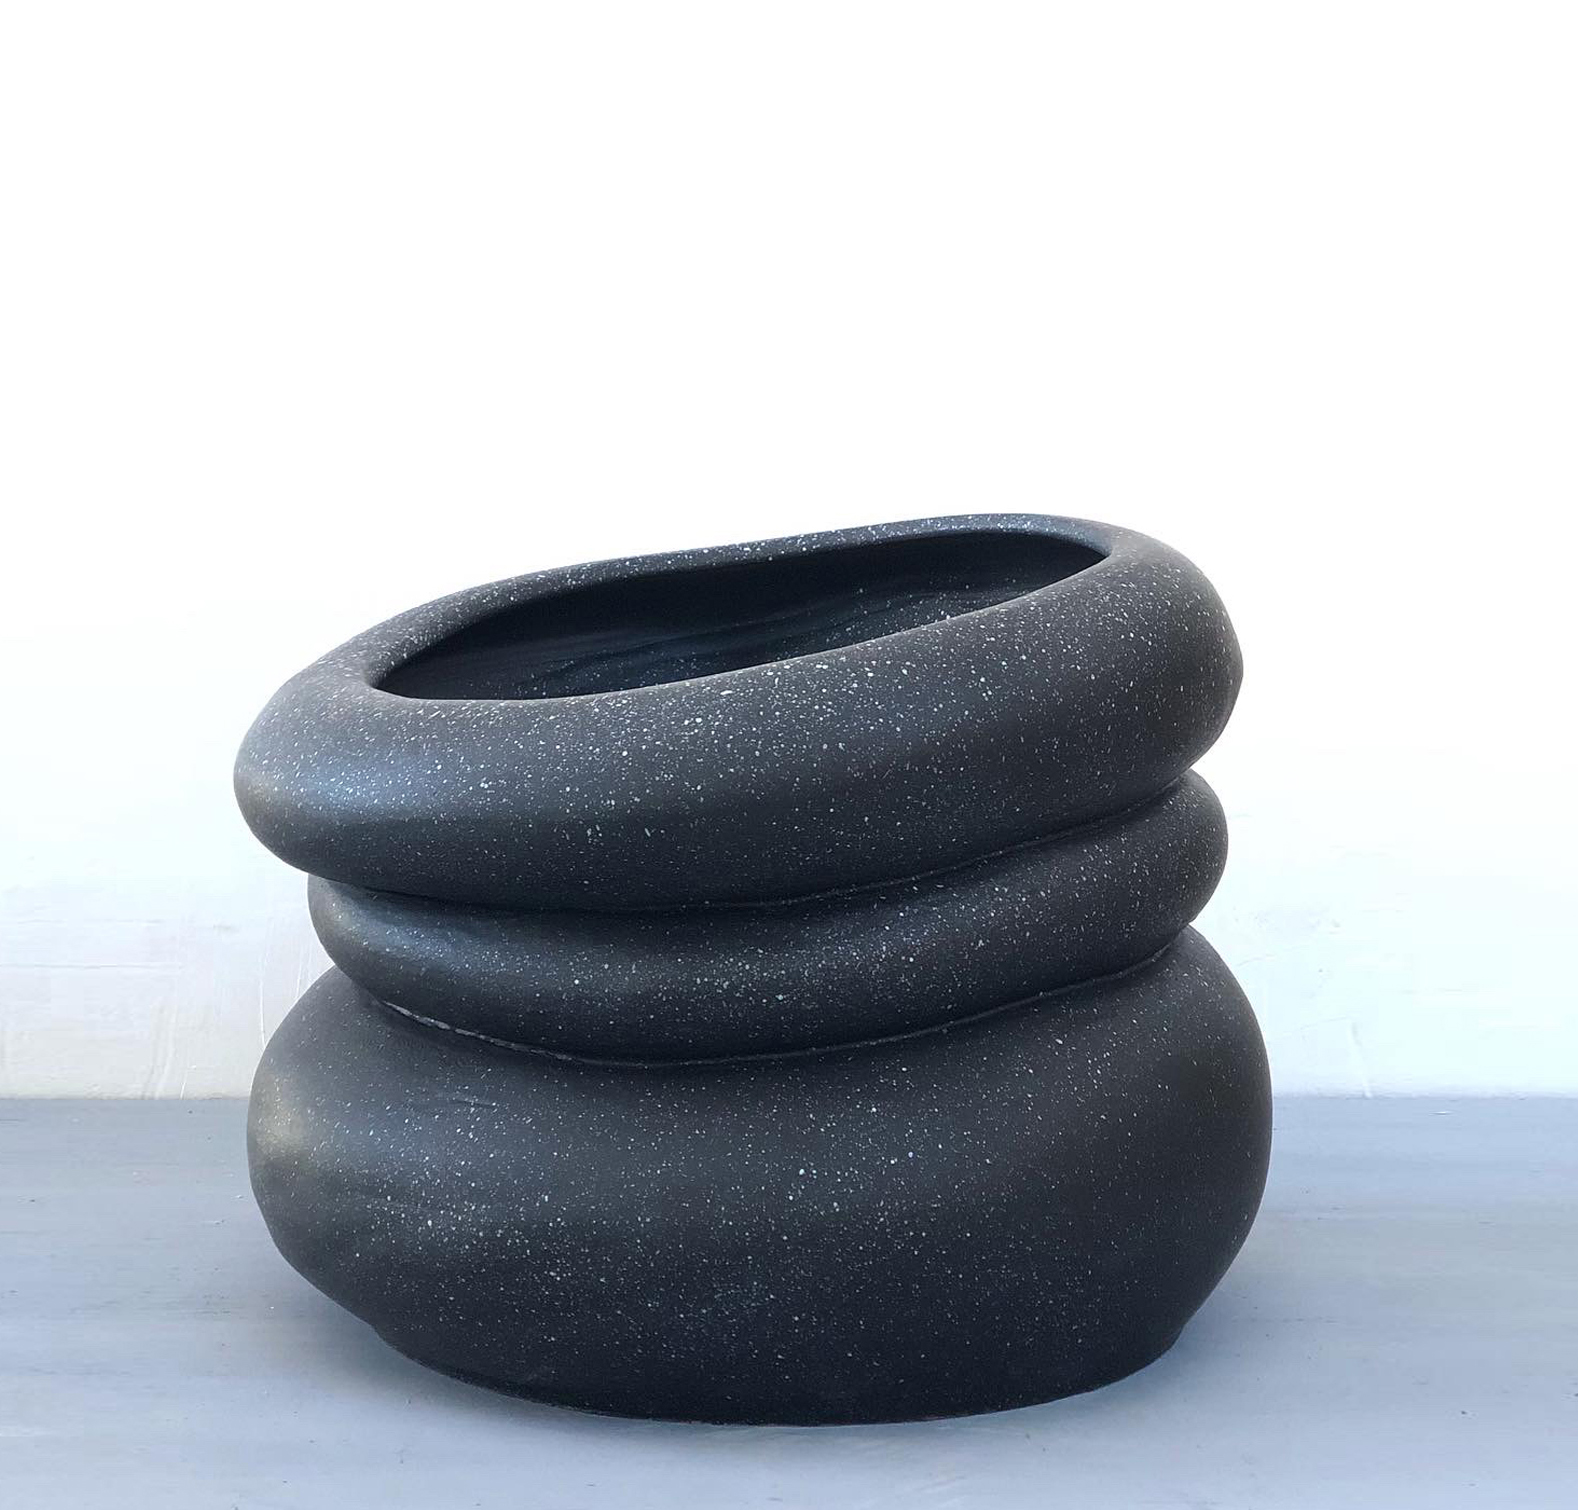 vaso di design per esterni e interni in ceramica verniciata collezione colate per la galleria vgo by nicole valenti niva design